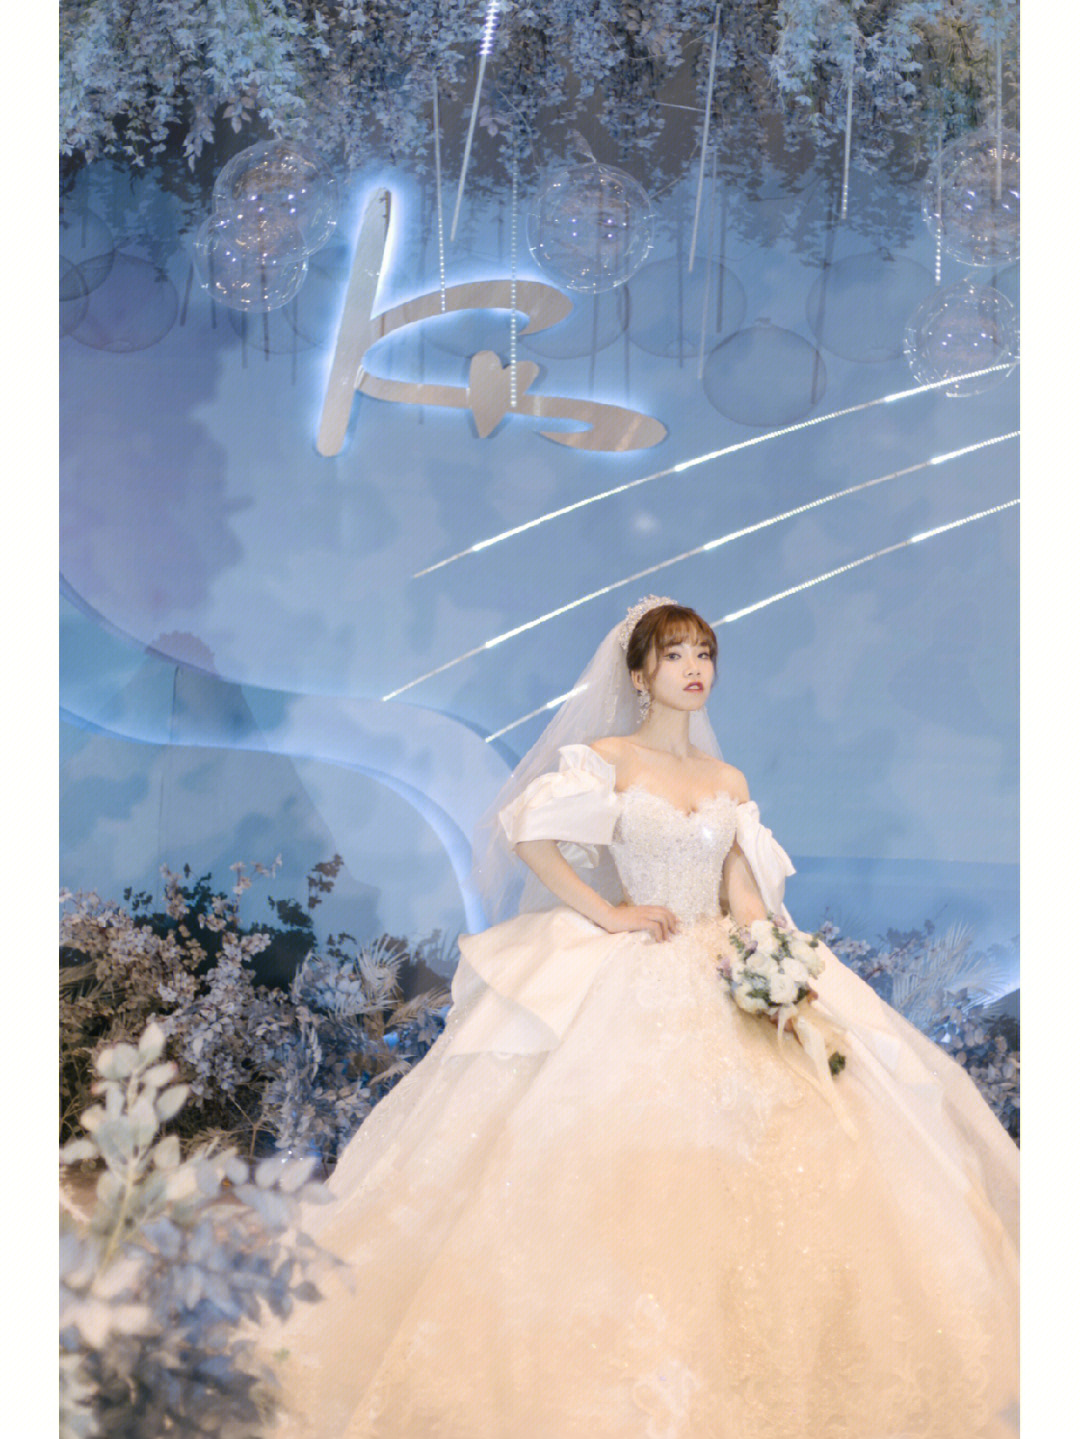 是怎样现在圆满了 特别圆满的那种温州婚纱@洛洛嫁衣温州店温州摄影